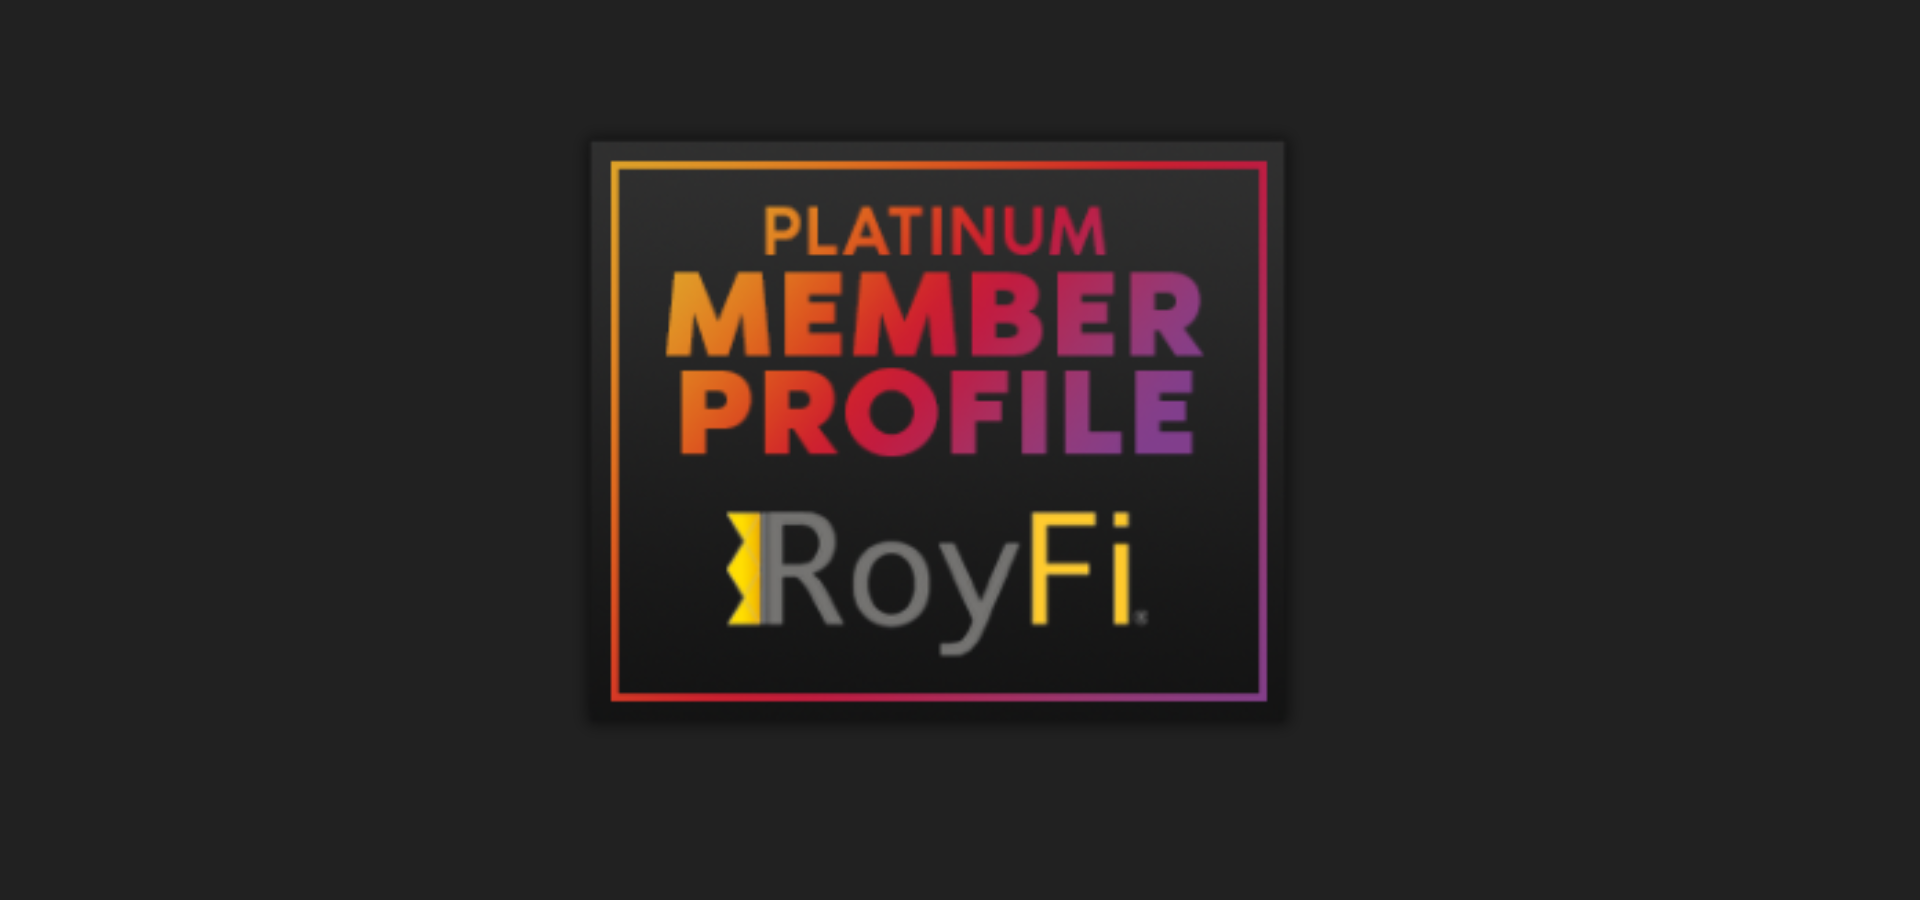 GMA Platinum Member Profile: RoyFi